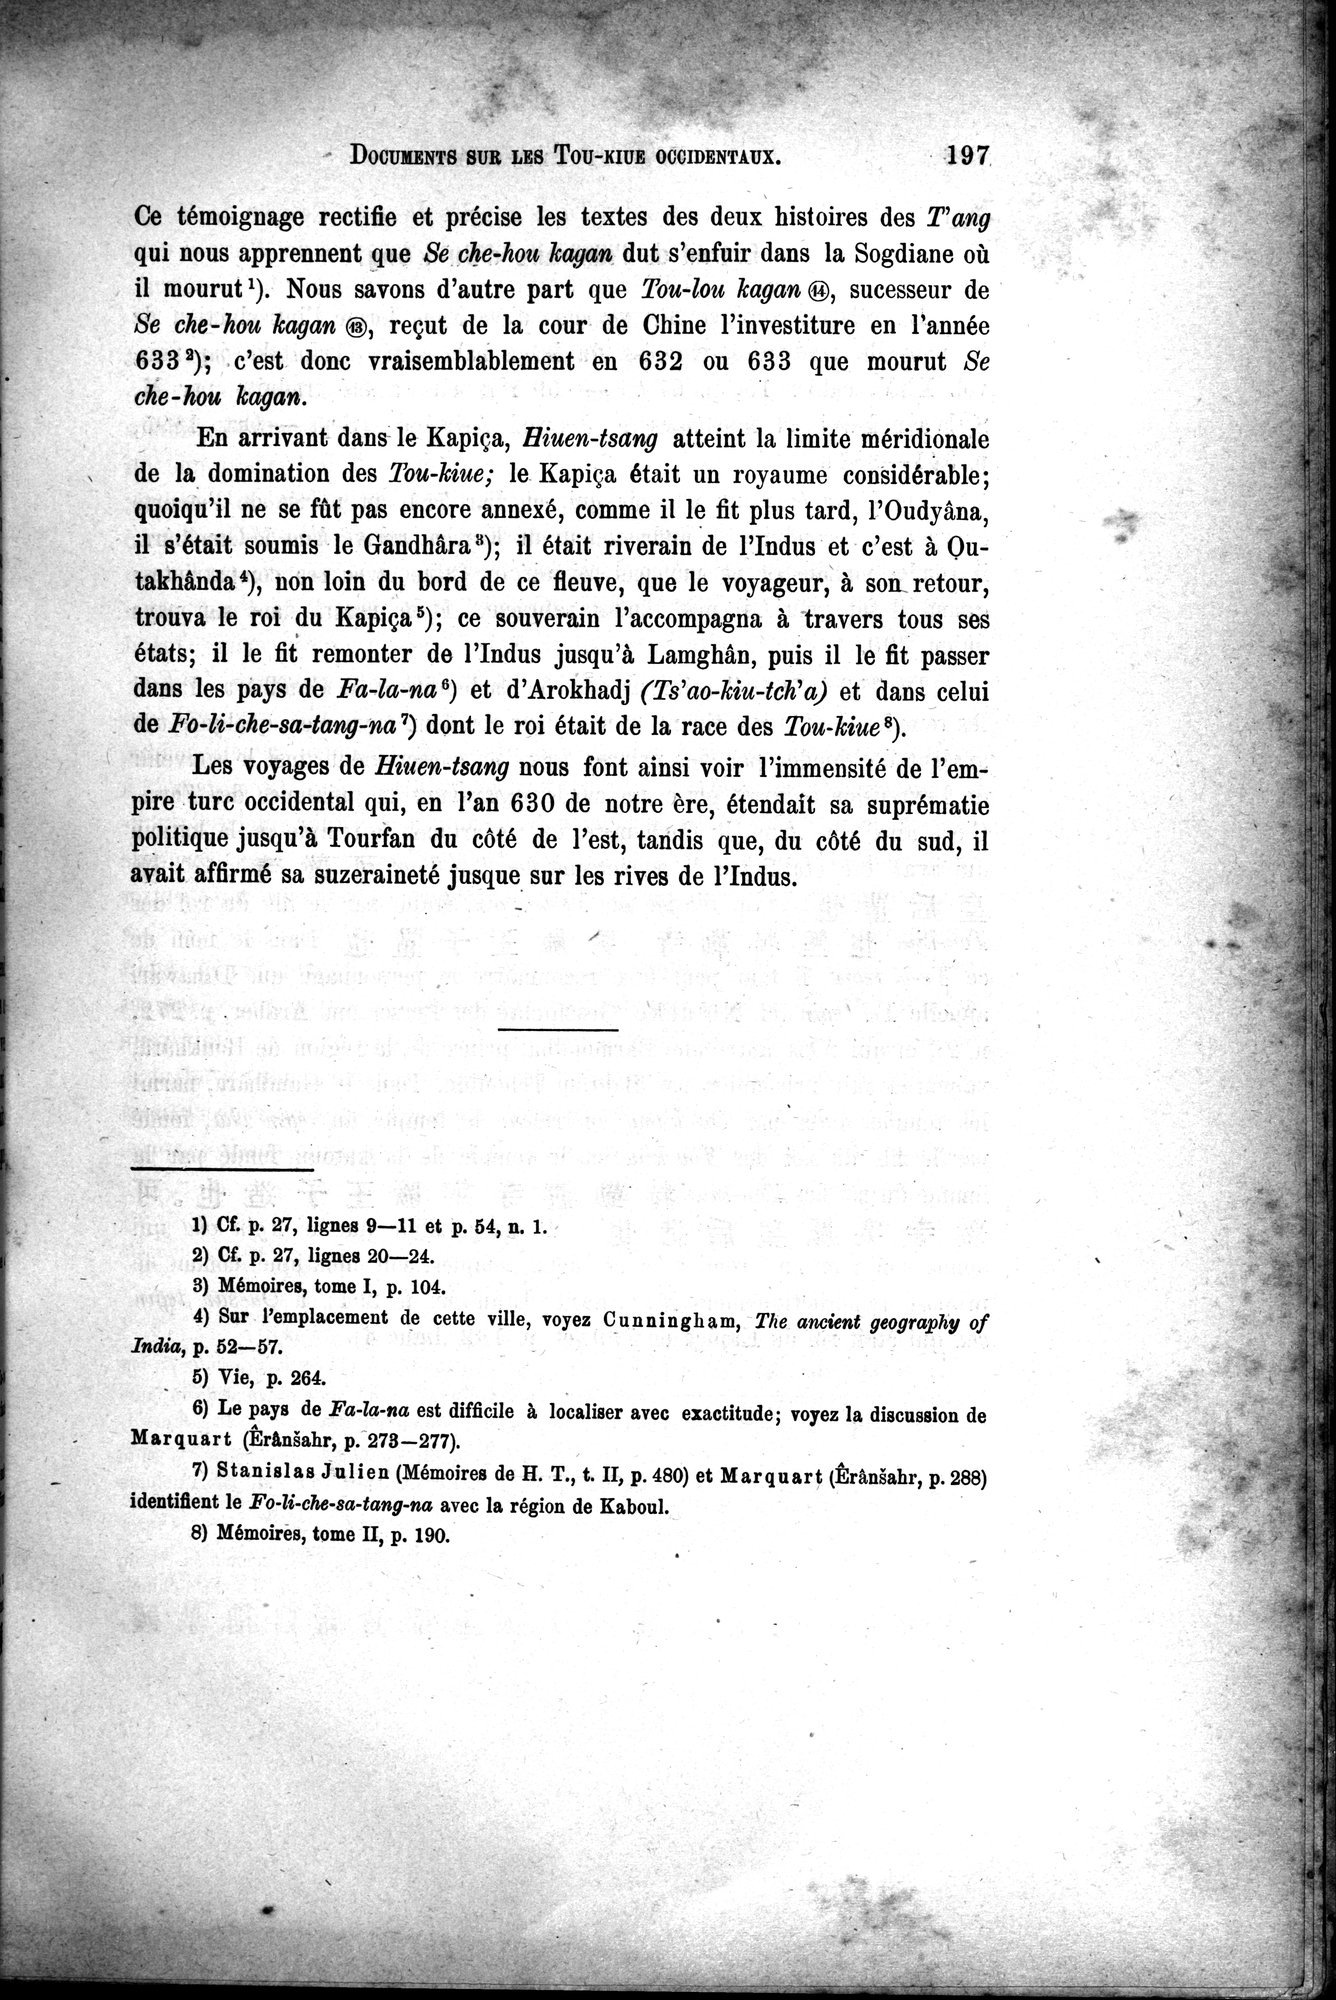 Documents sur les Tou-kiue (Turcs) occidentaux : vol.1 / Page 207 (Grayscale High Resolution Image)